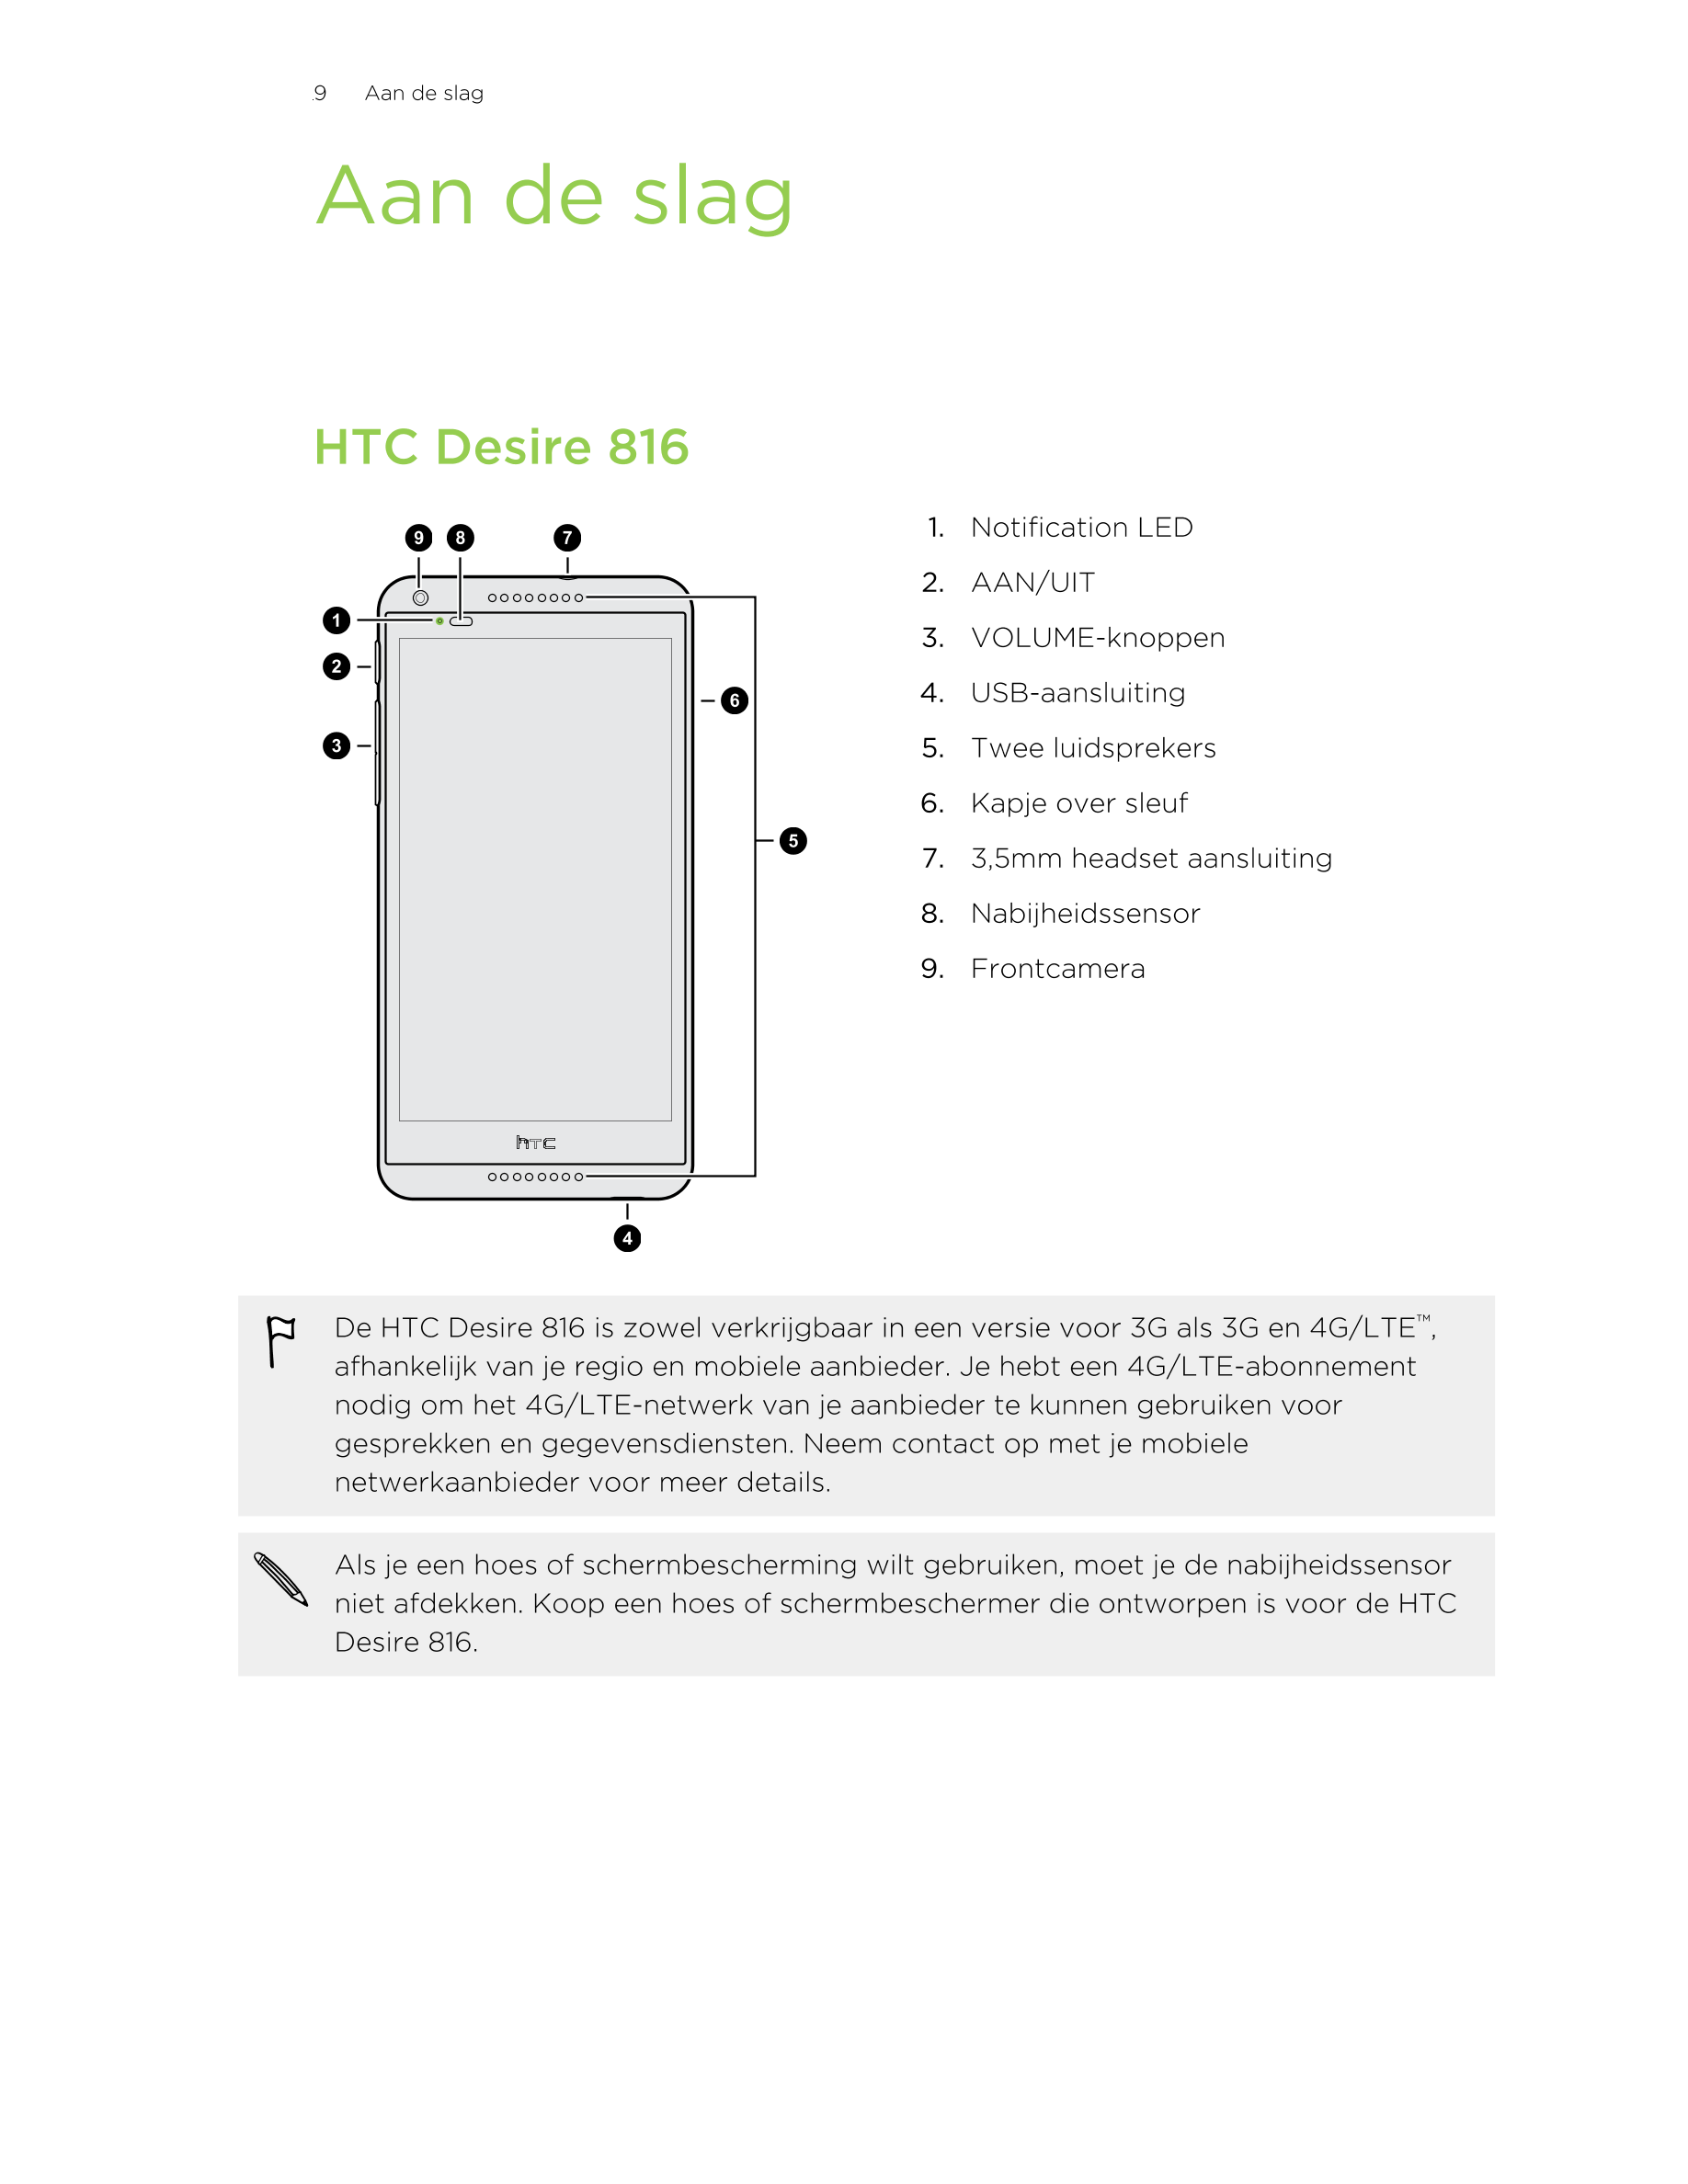 9      Aan de slag
Aan de slag
HTC Desire 816
1. Notification LED
2. AAN/UIT
3. VOLUME-knoppen
4. USB-aansluiting
5. Twee luidsp